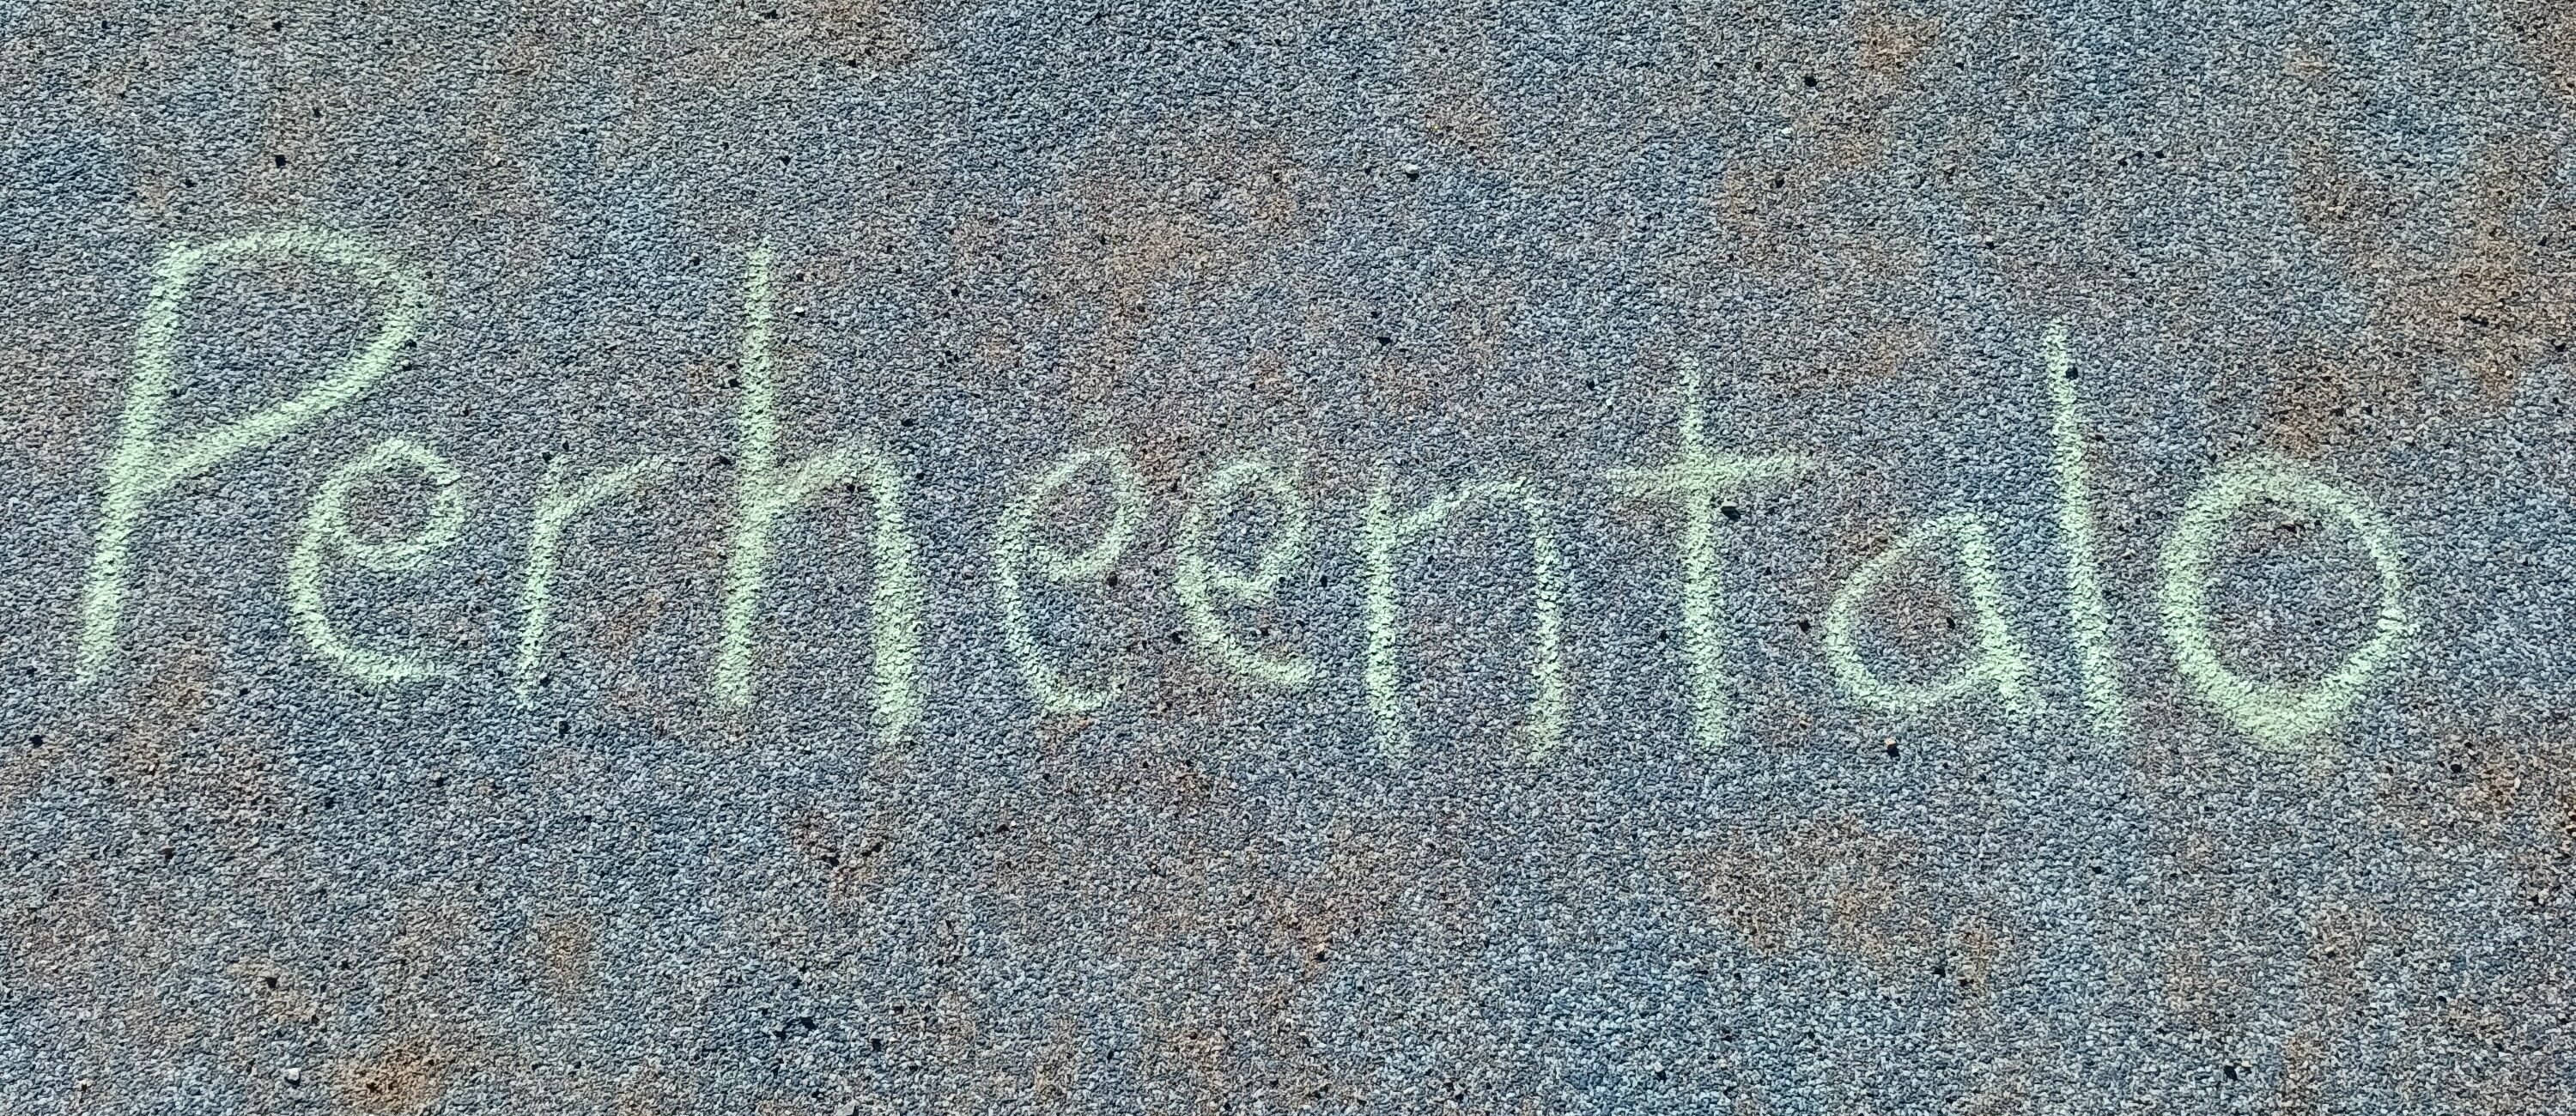 Perheentalo kirjoitettuna asfalttiin liidulla